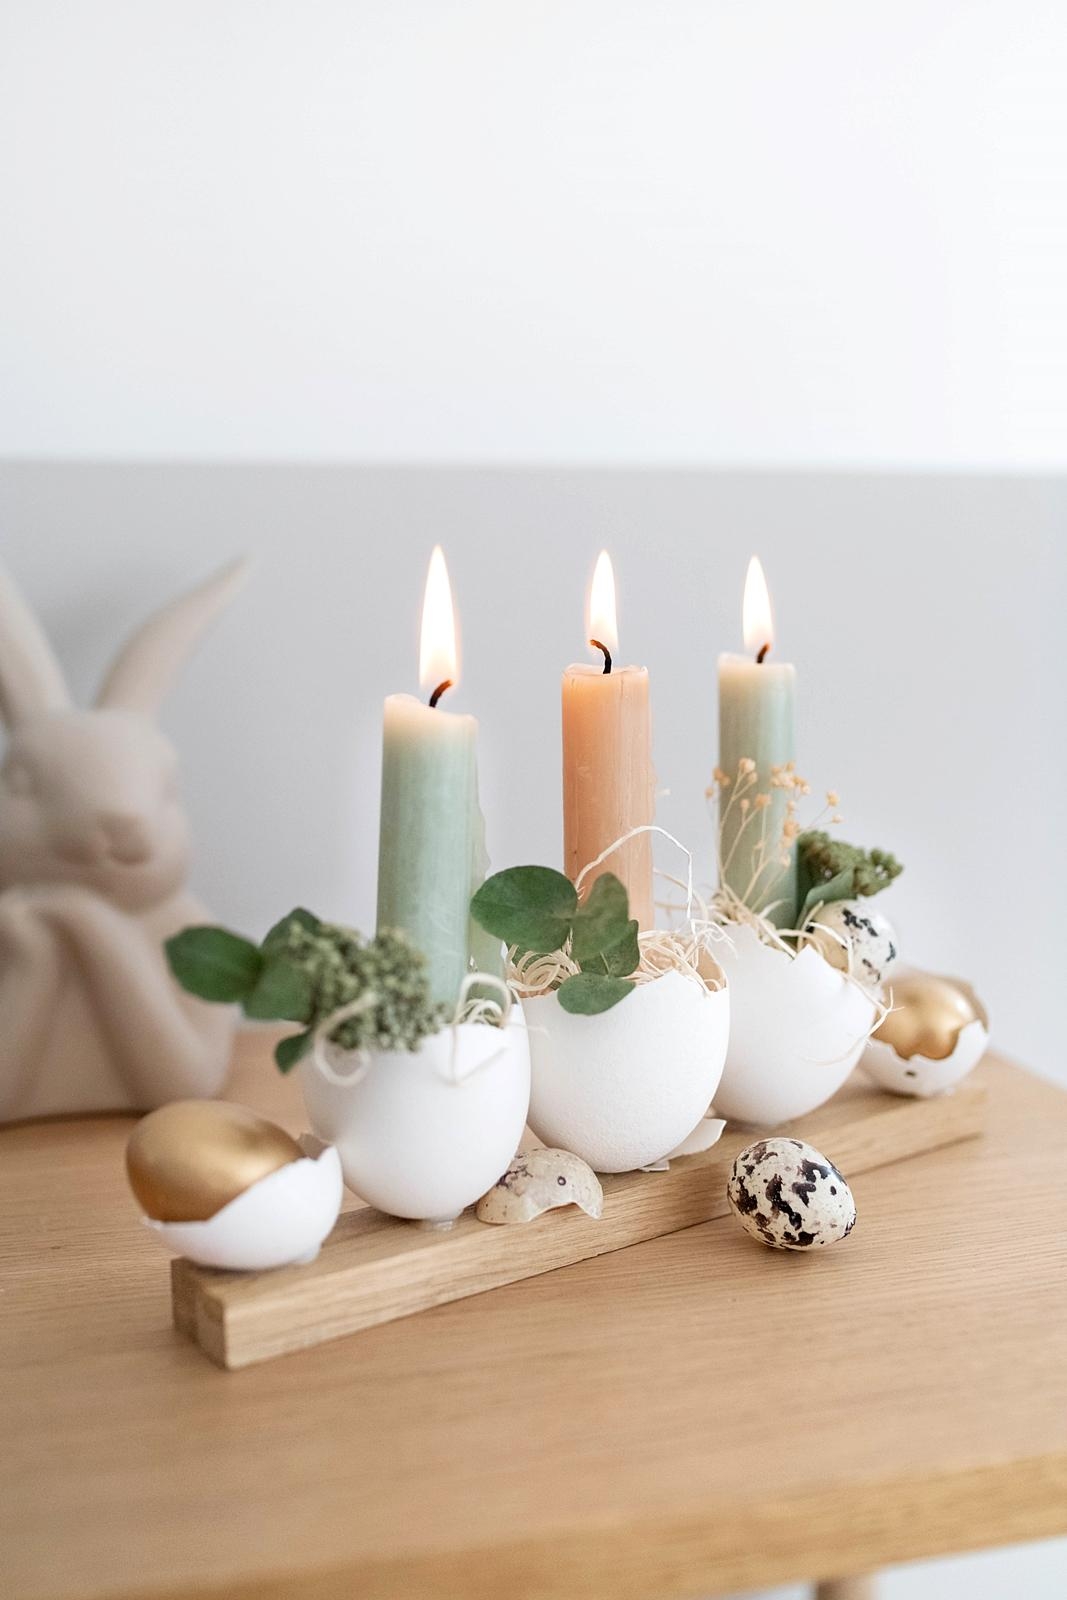 Egg-cellent! Einfache Osterdeko-Idee mit Eierschalen, Kerzen und Trockenblumen
#diy #ostern #frühlingsdeko